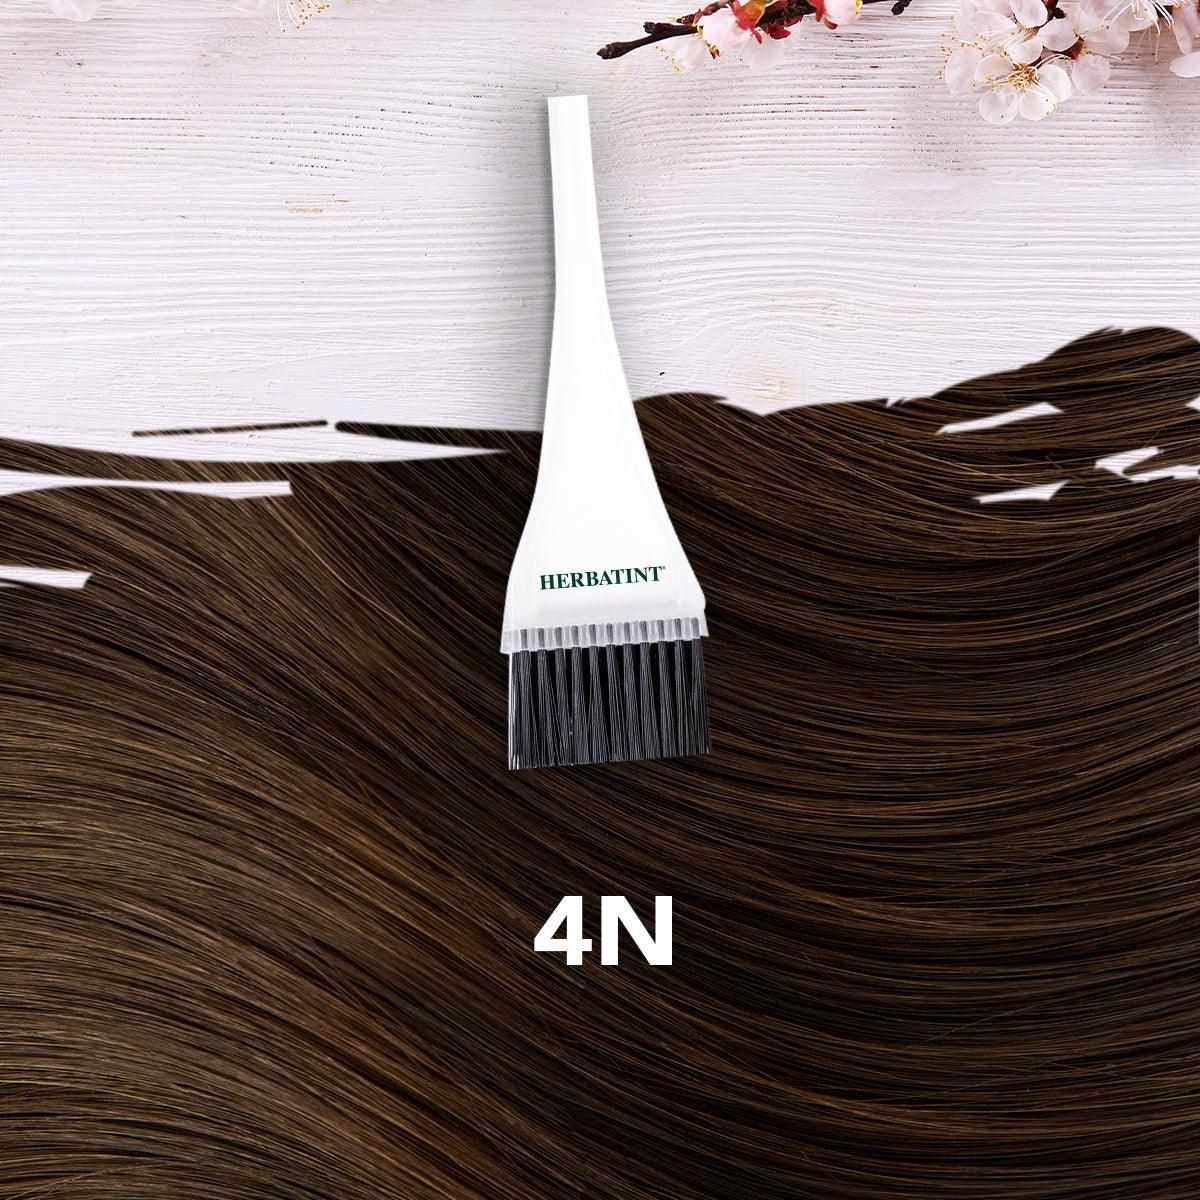 צבע טבעי לשיער גוון חום ערמוני 4N | הרבטינט - Herbatint - פריקפוא